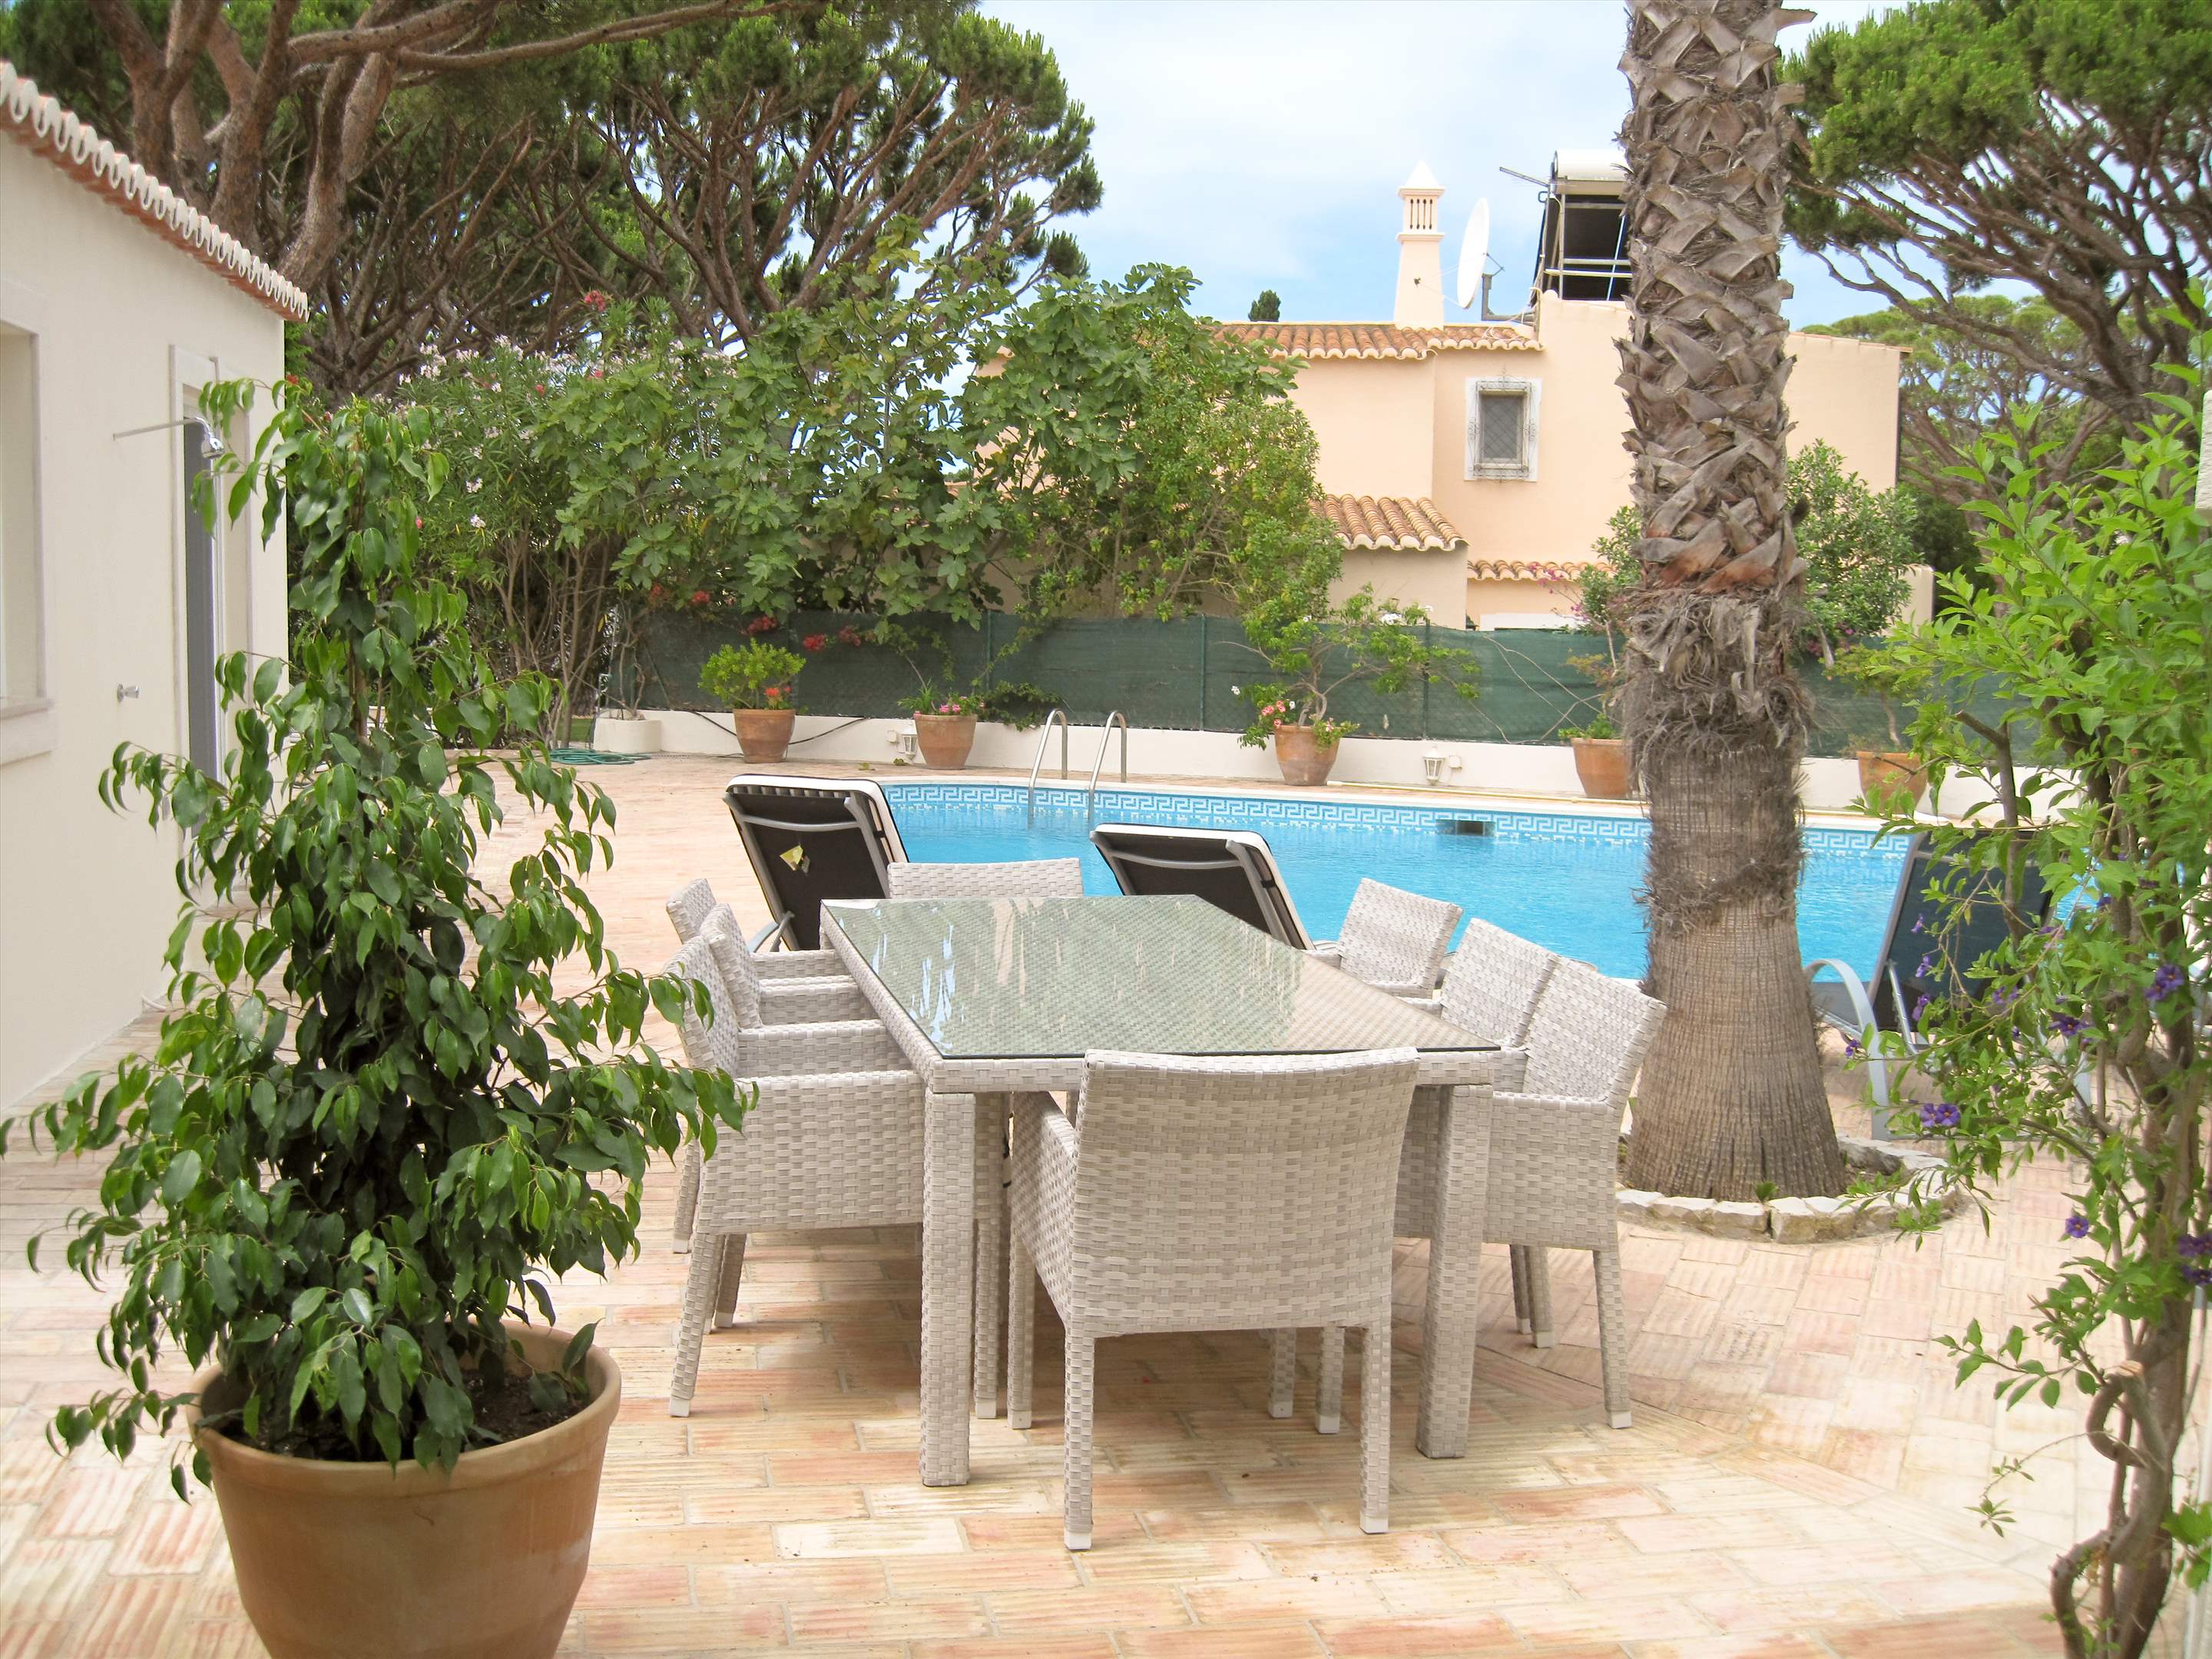 Casa Blanca, 3 Bed Rental, 3 bedroom villa in Vale do Lobo, Algarve Photo #6